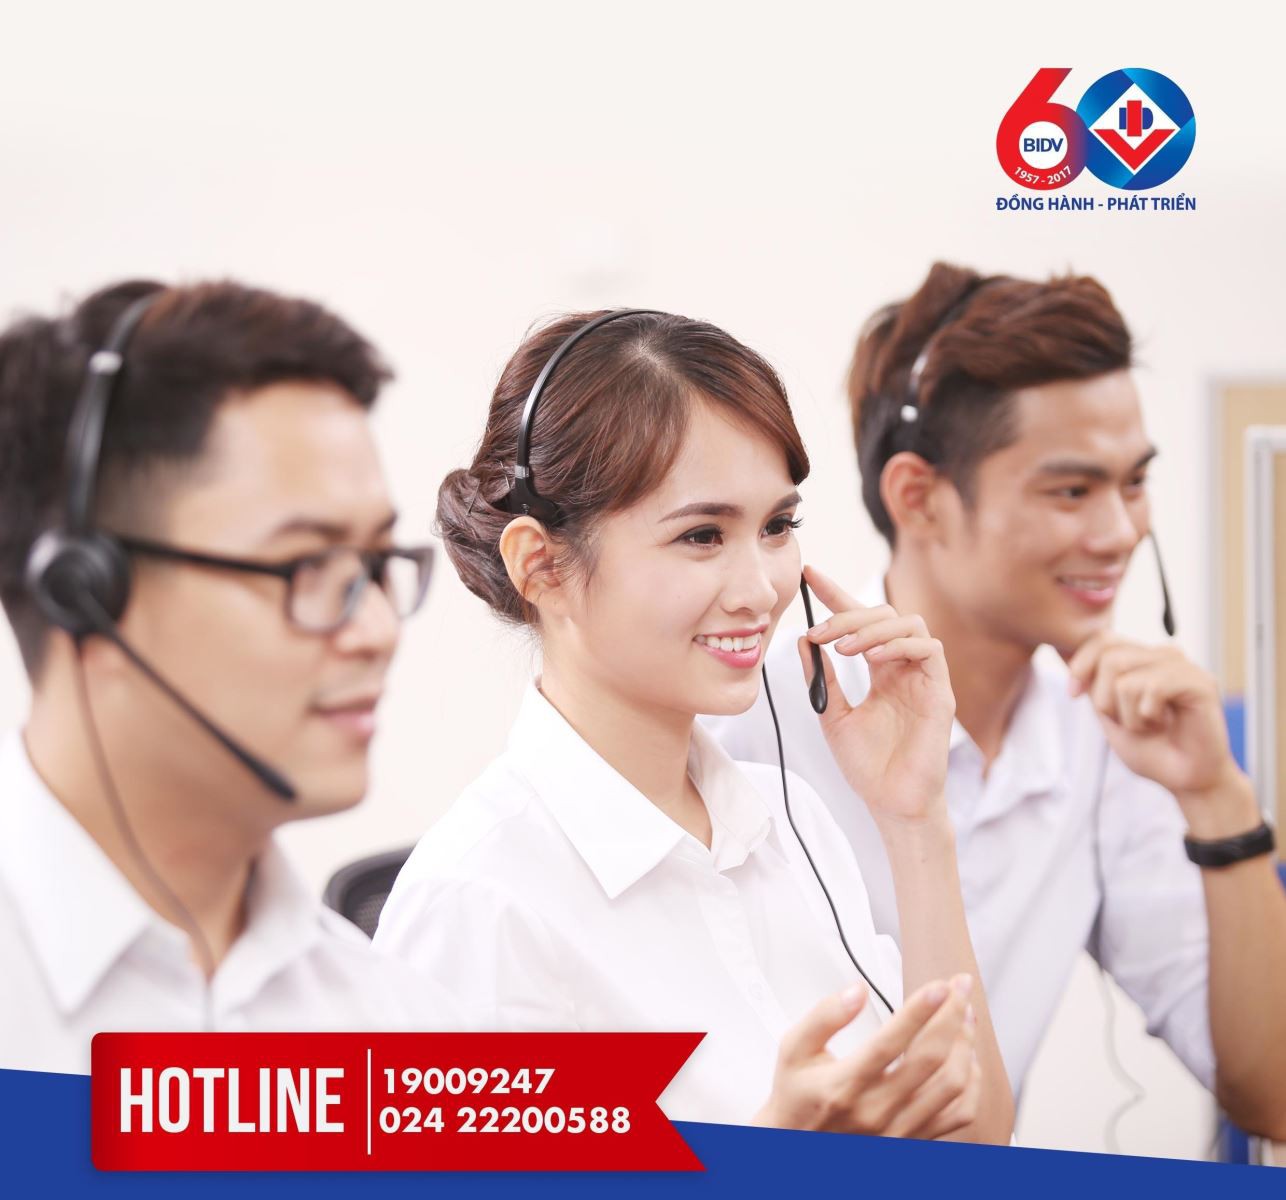 Hotline chăm sóc khách hàng ngân hàng BIDV 24/7